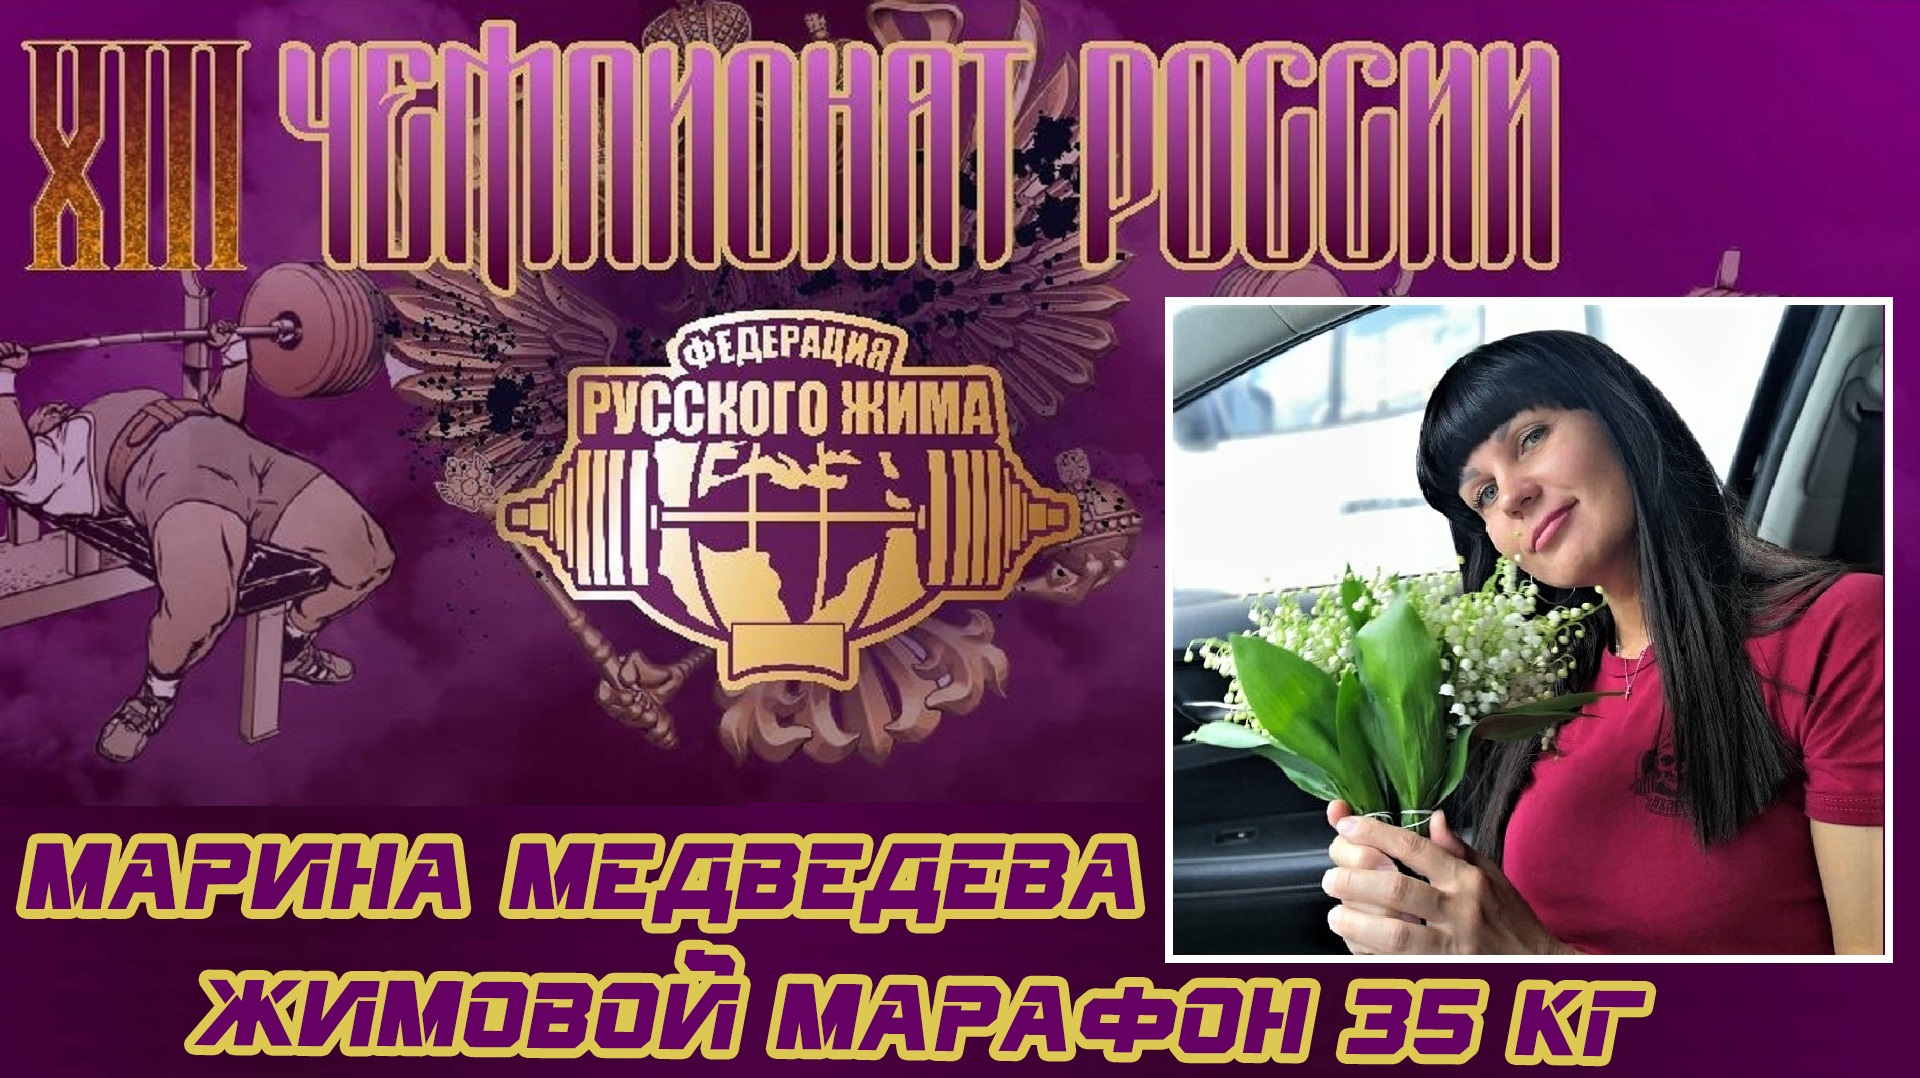 Медведева Марина. XIII ЧЕМПИОНАТ РОССИИ. Жимовой марафон 35х325.